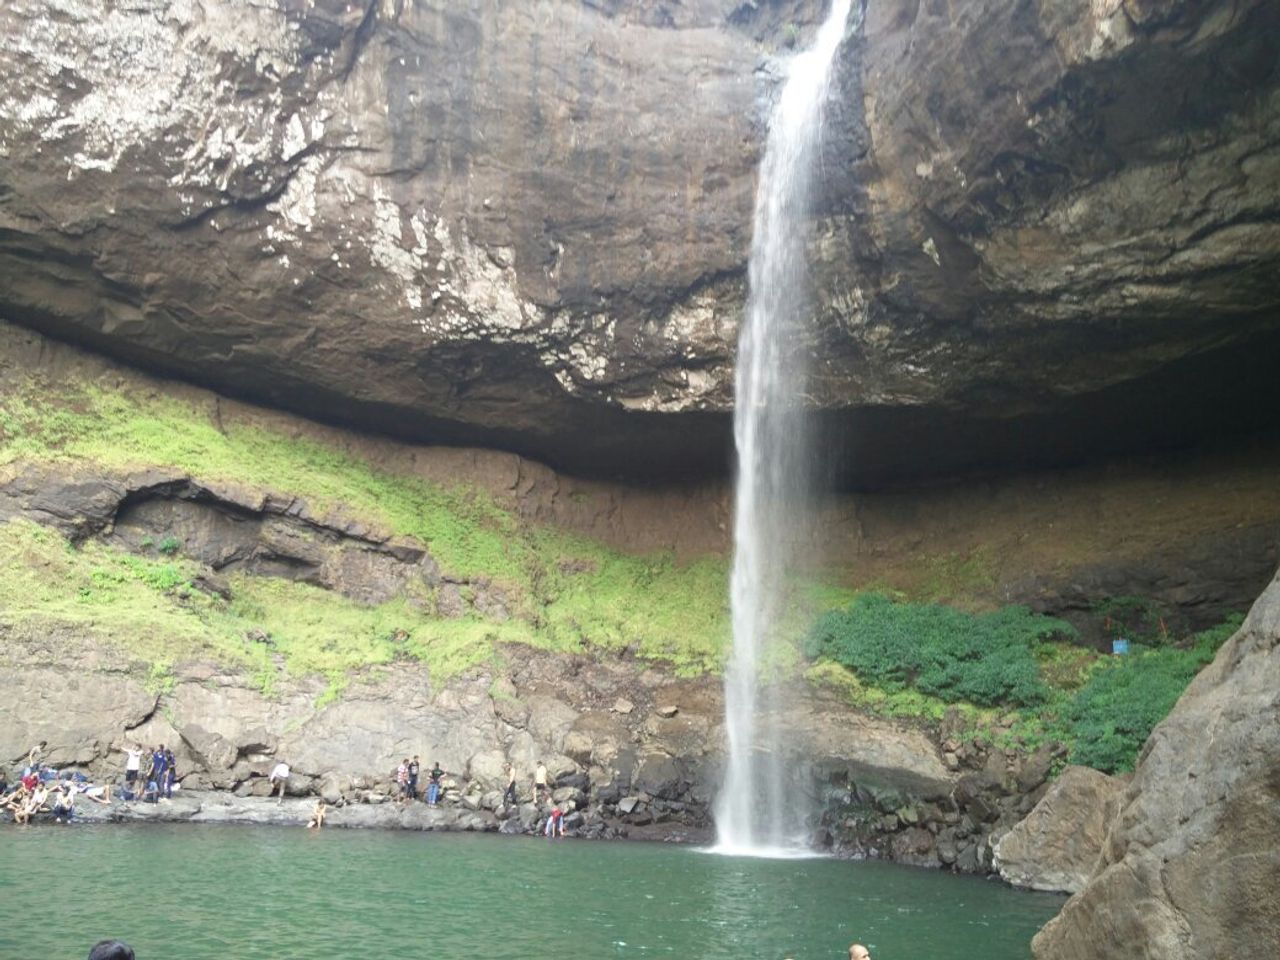 Découvrez la beauté naturelle préservée de la cascade de Pimpilala à Tena, Équateur.